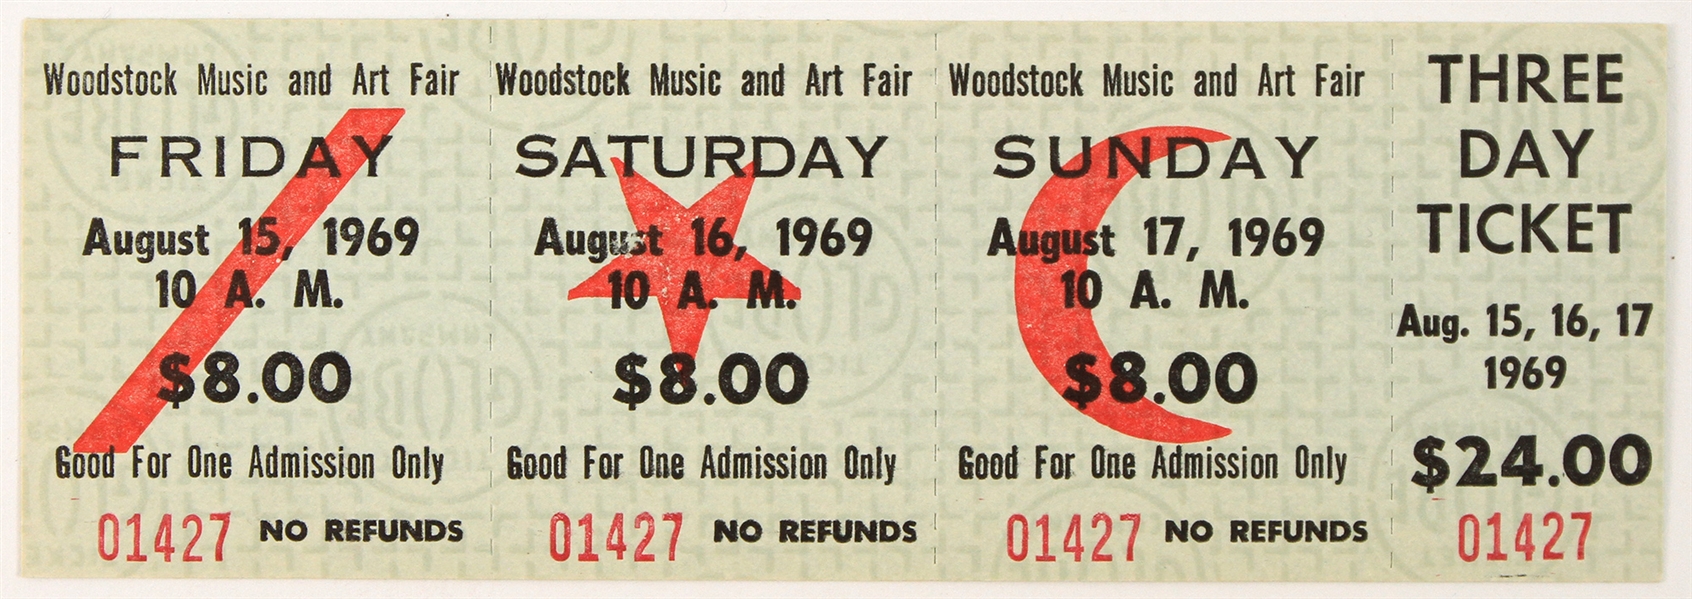 1969 Woodstock Music & Art Fair Full Unused Three Day Ticket